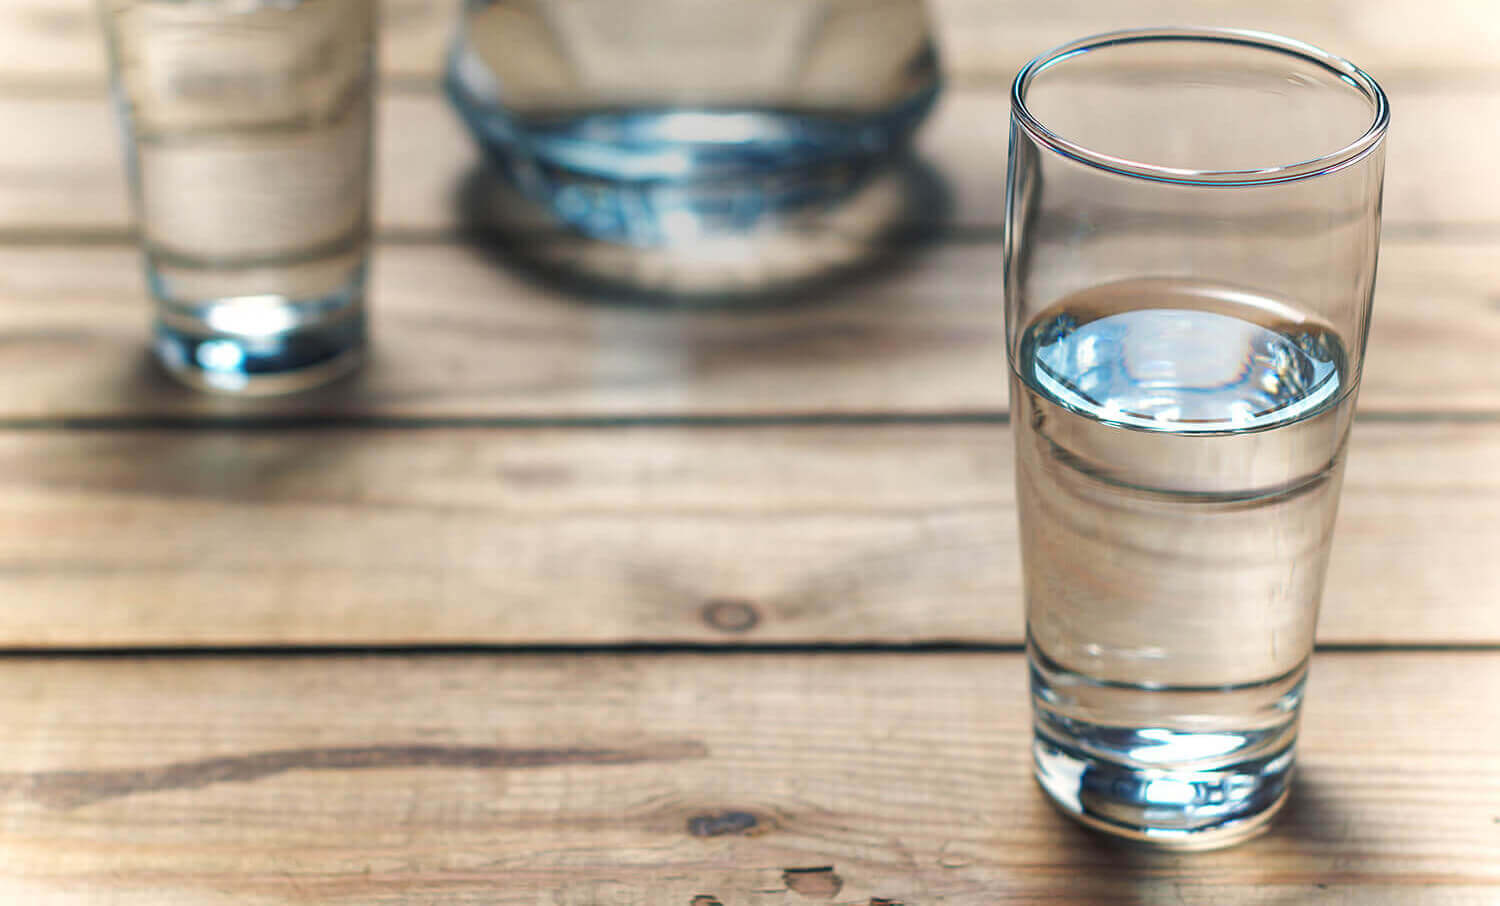 Wassergenossenschaft Trinkwasser ist ein wertvoller Schatz